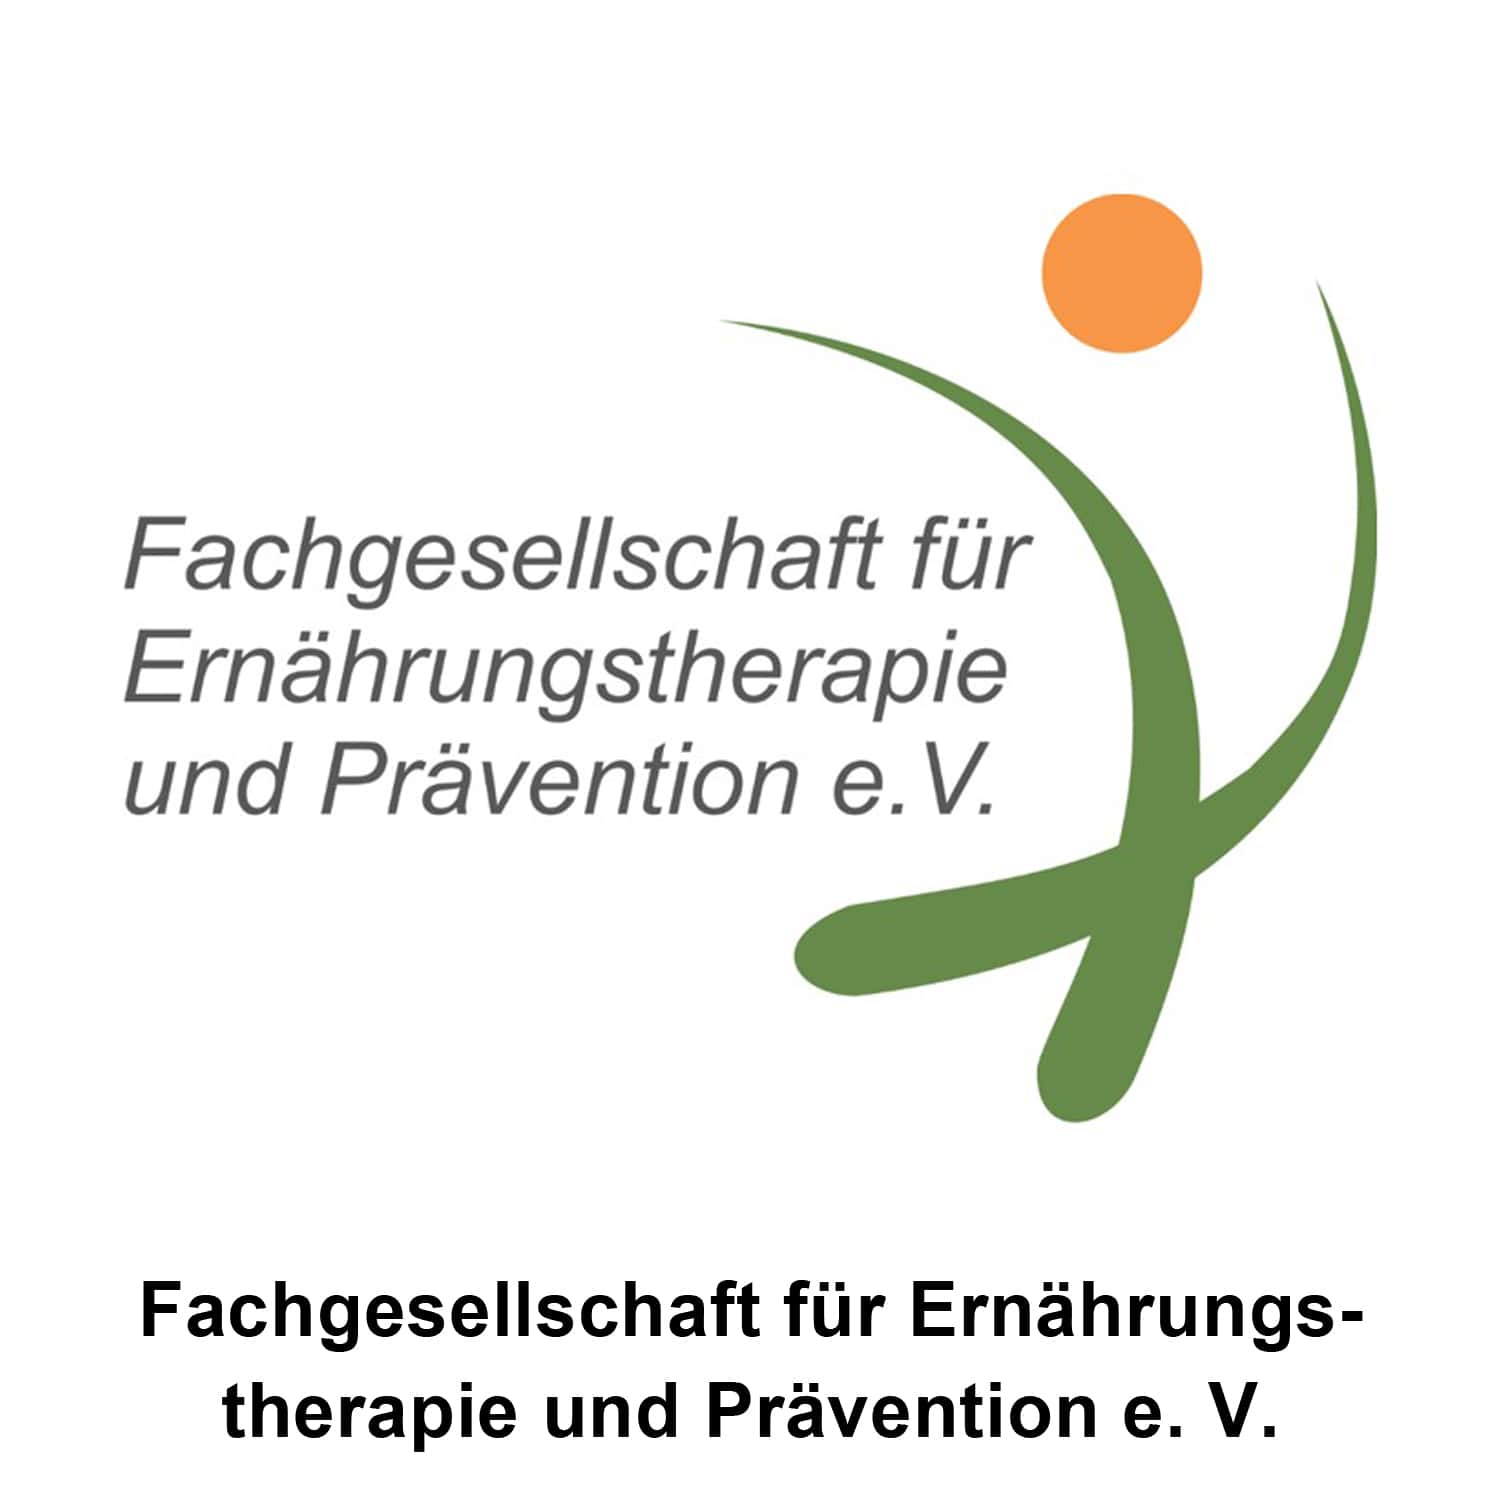 Fachgesellschaft für Ernährungstherapie und Prävention (FET) e.V.